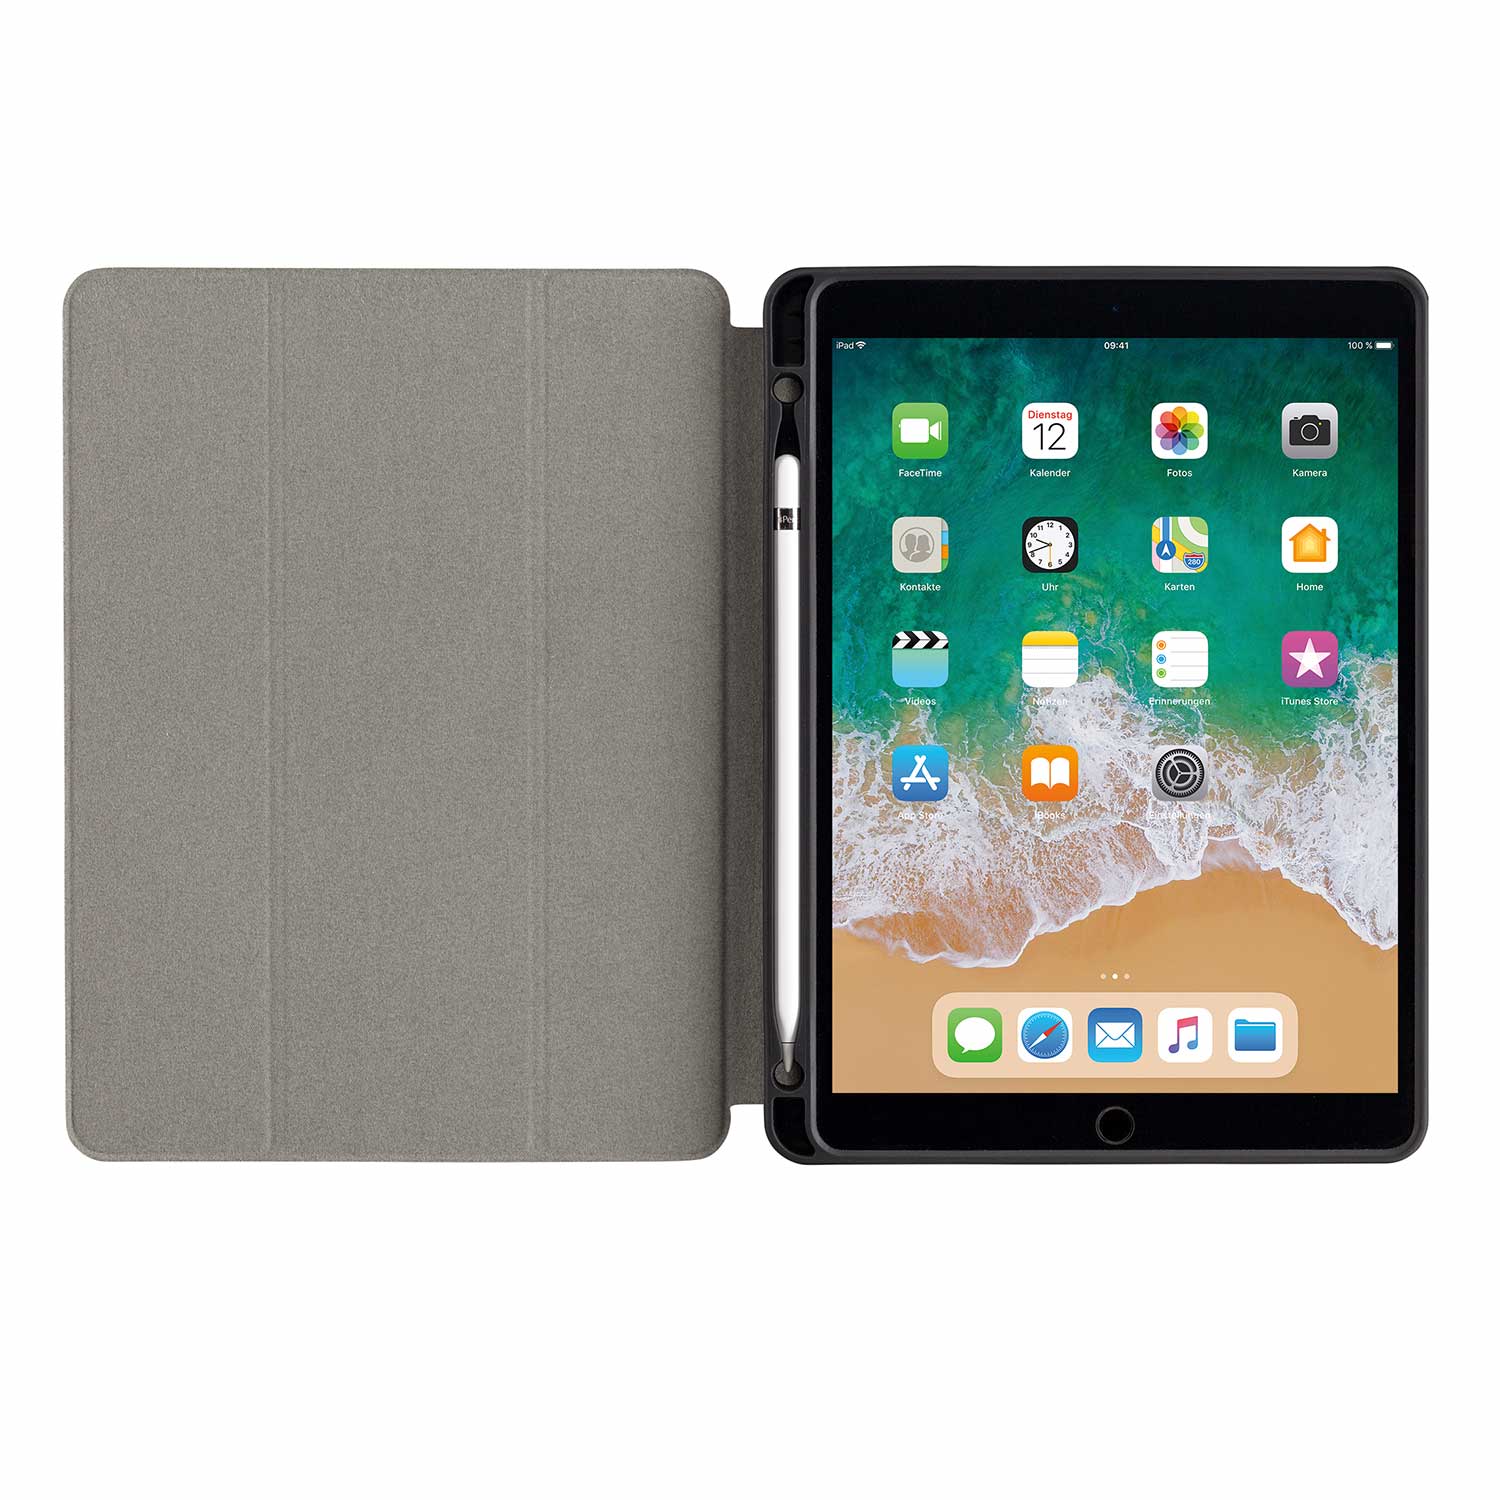 SHOCKGUARD SLIM / PEN iPad 10.2 Folio Case schwarz EDU 